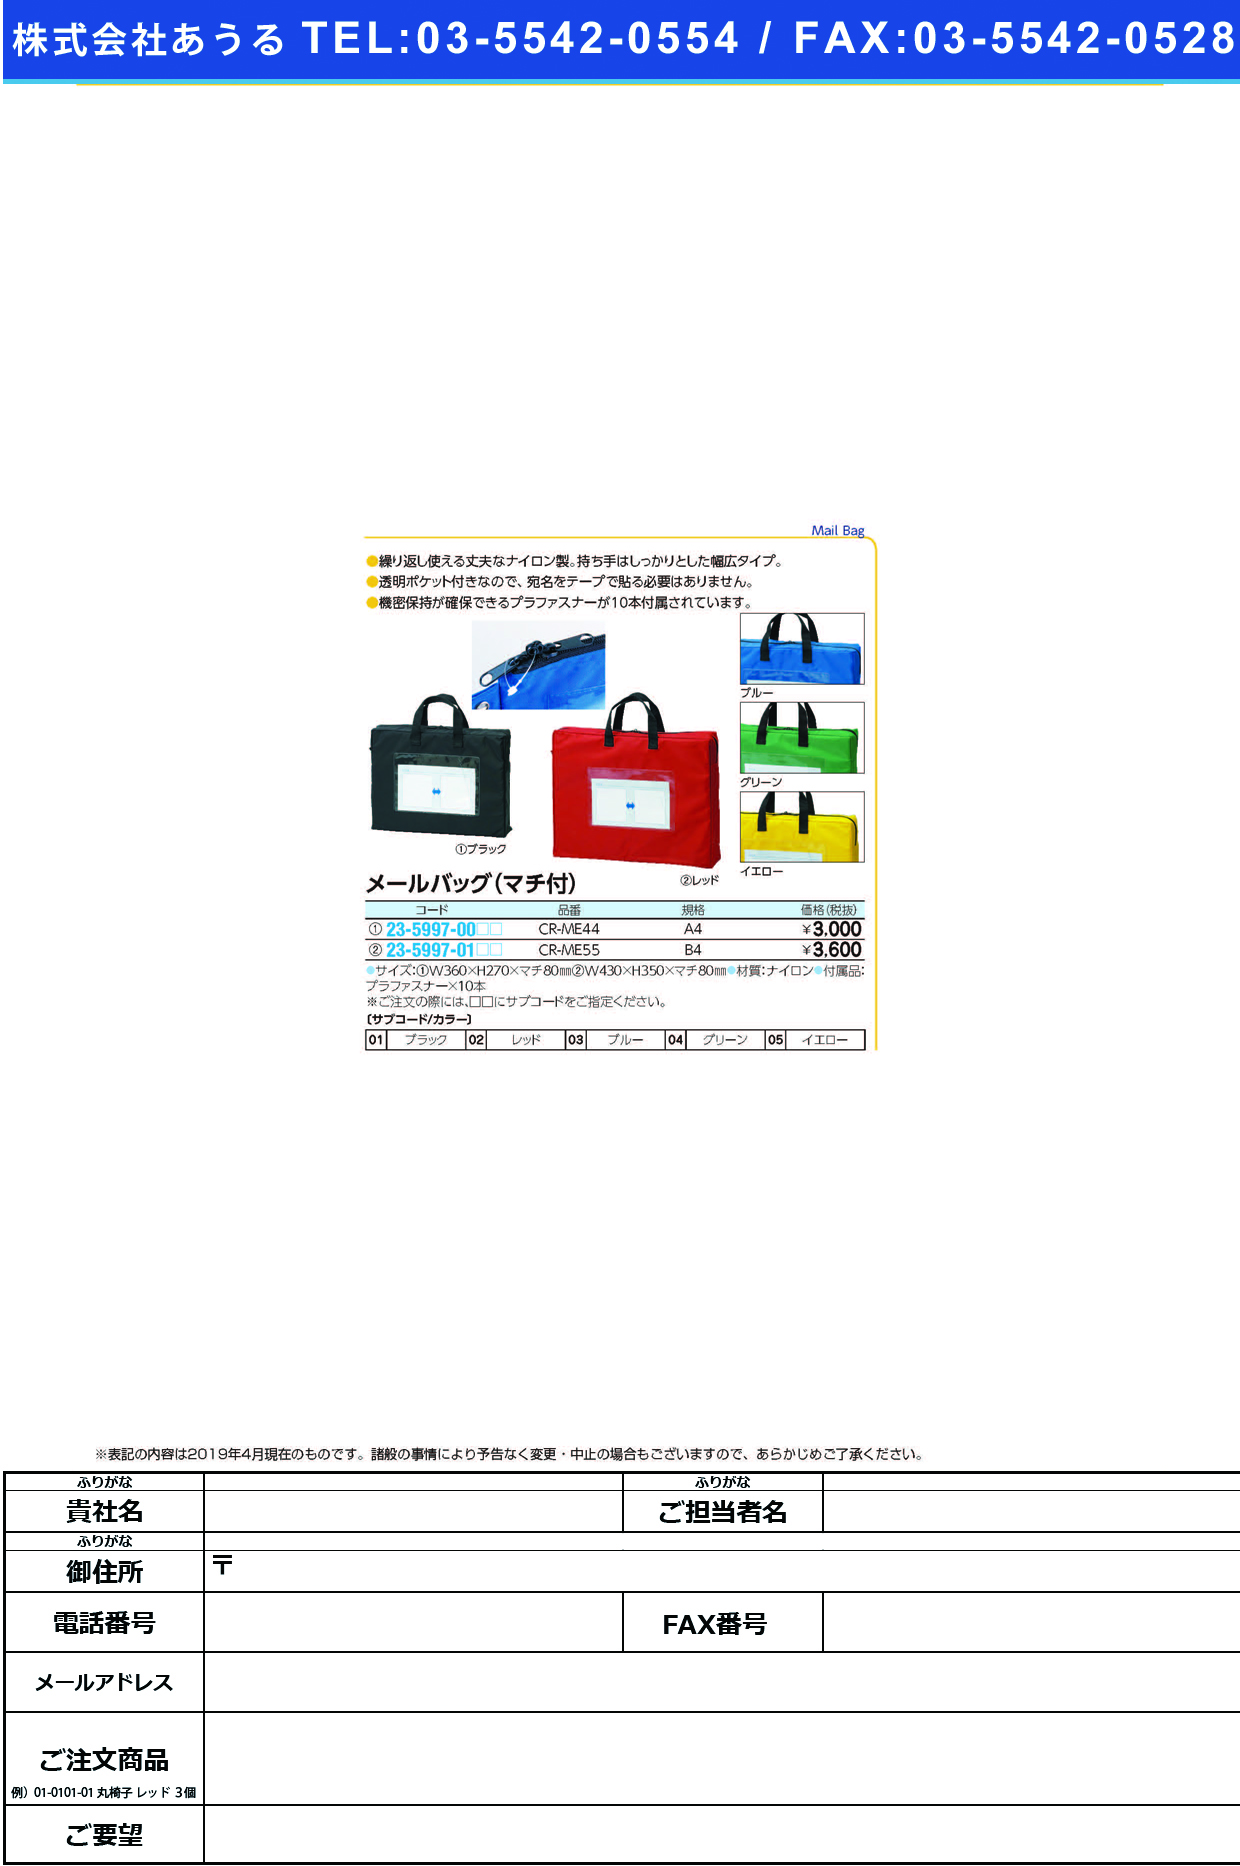 (23-5997-01)メールバッグ（マチ付） CR-ME55(B4) ﾒｰﾙﾊﾞｯｸﾞ(ﾏﾁﾂｷ) ブルー【1個単位】【2019年カタログ商品】